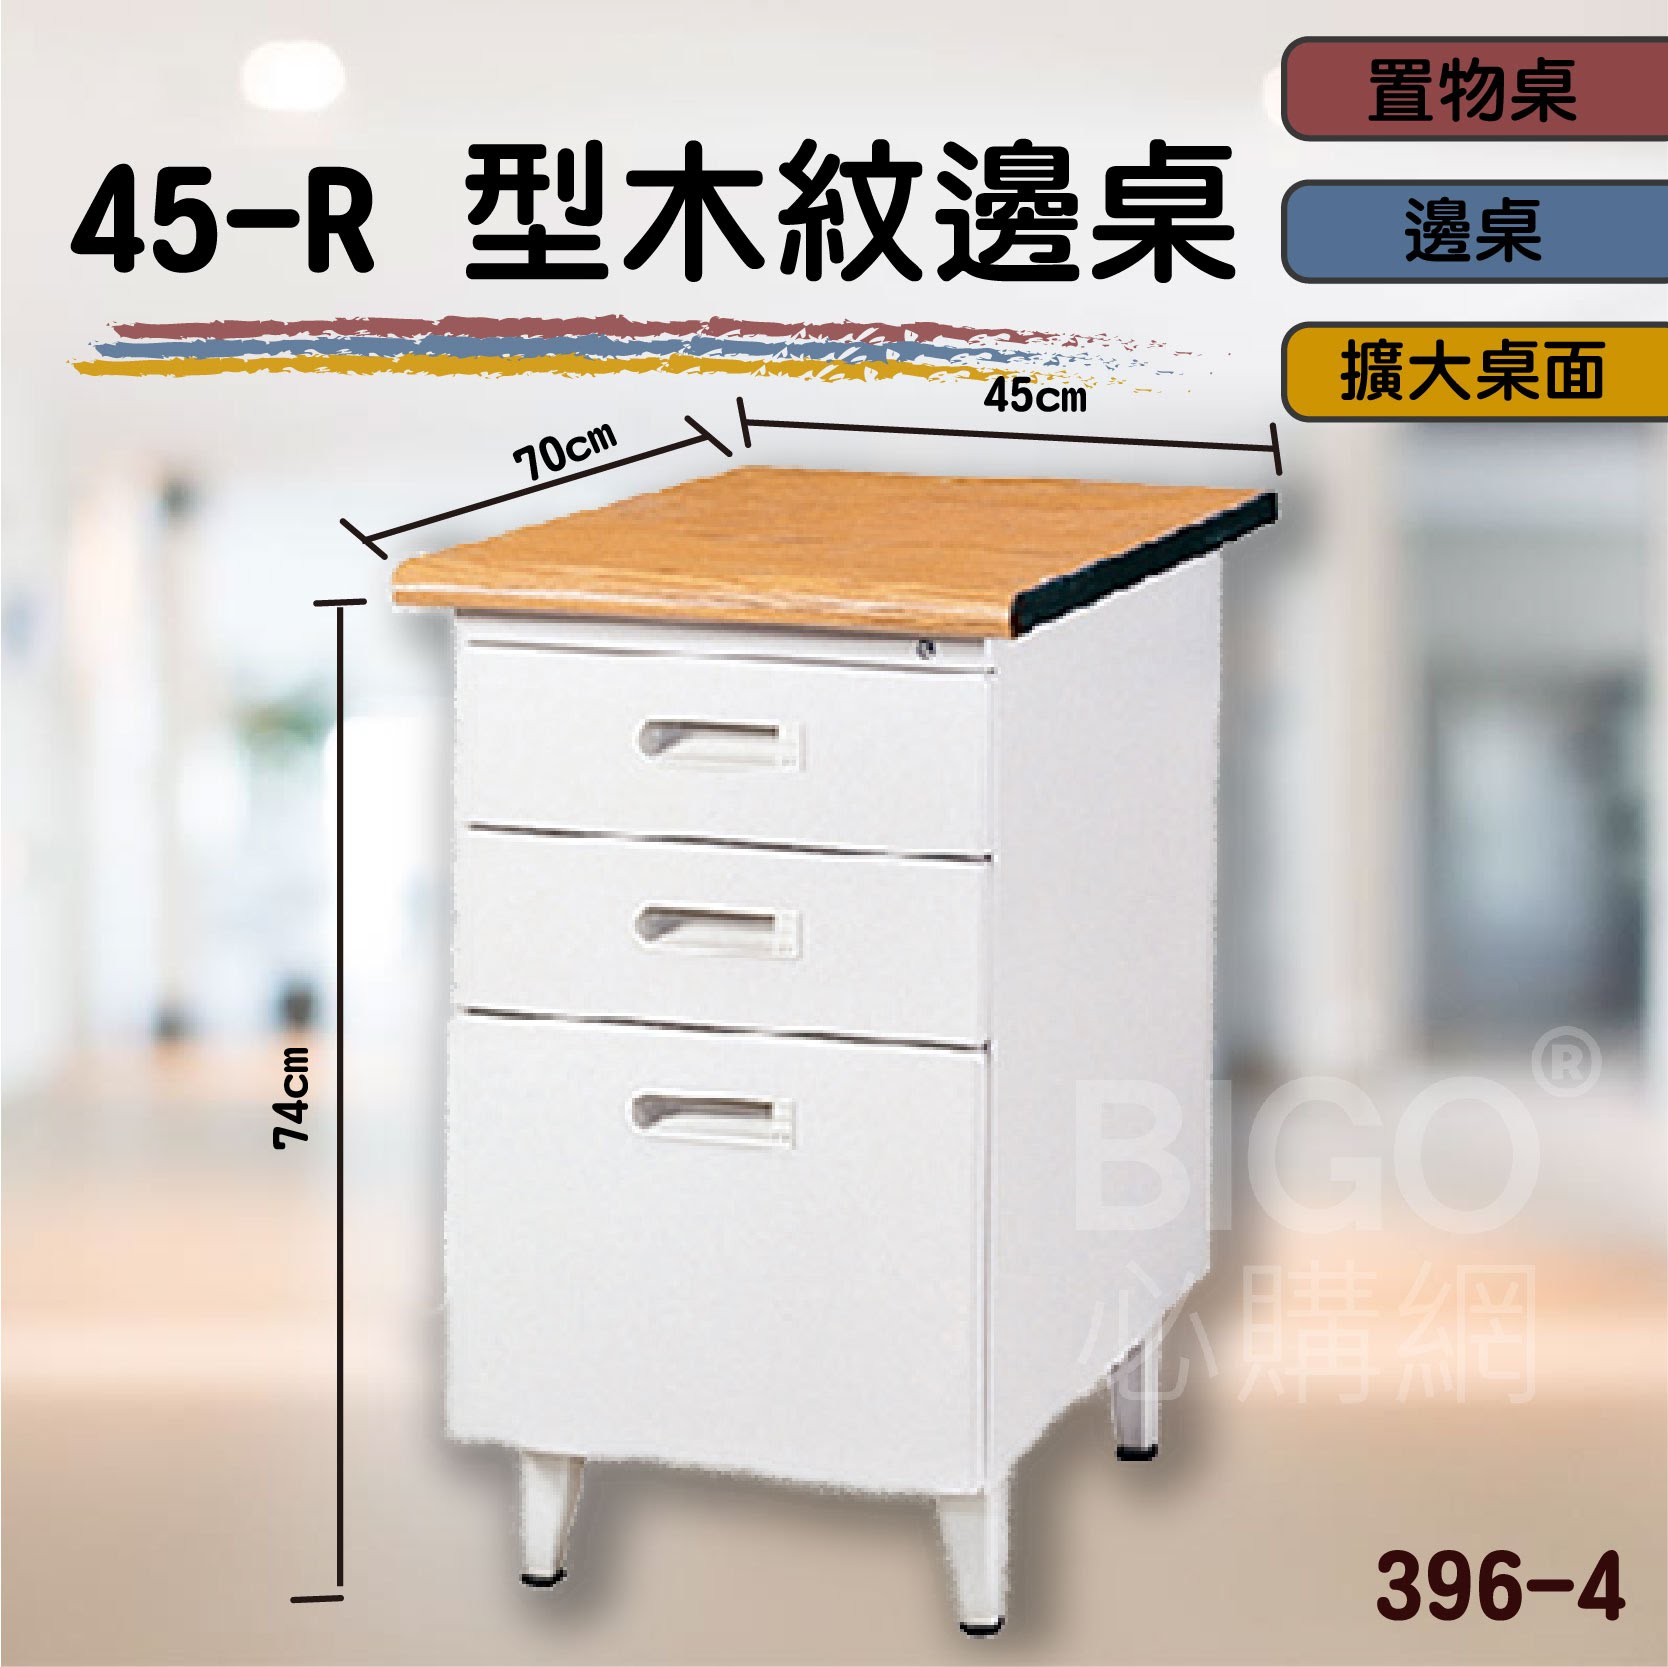 熱銷款➤45-R型木紋邊桌396-4 桌子 書桌 電腦桌 辦公桌 主管桌 抽屜櫃 公司 學校 辦公室 會議室